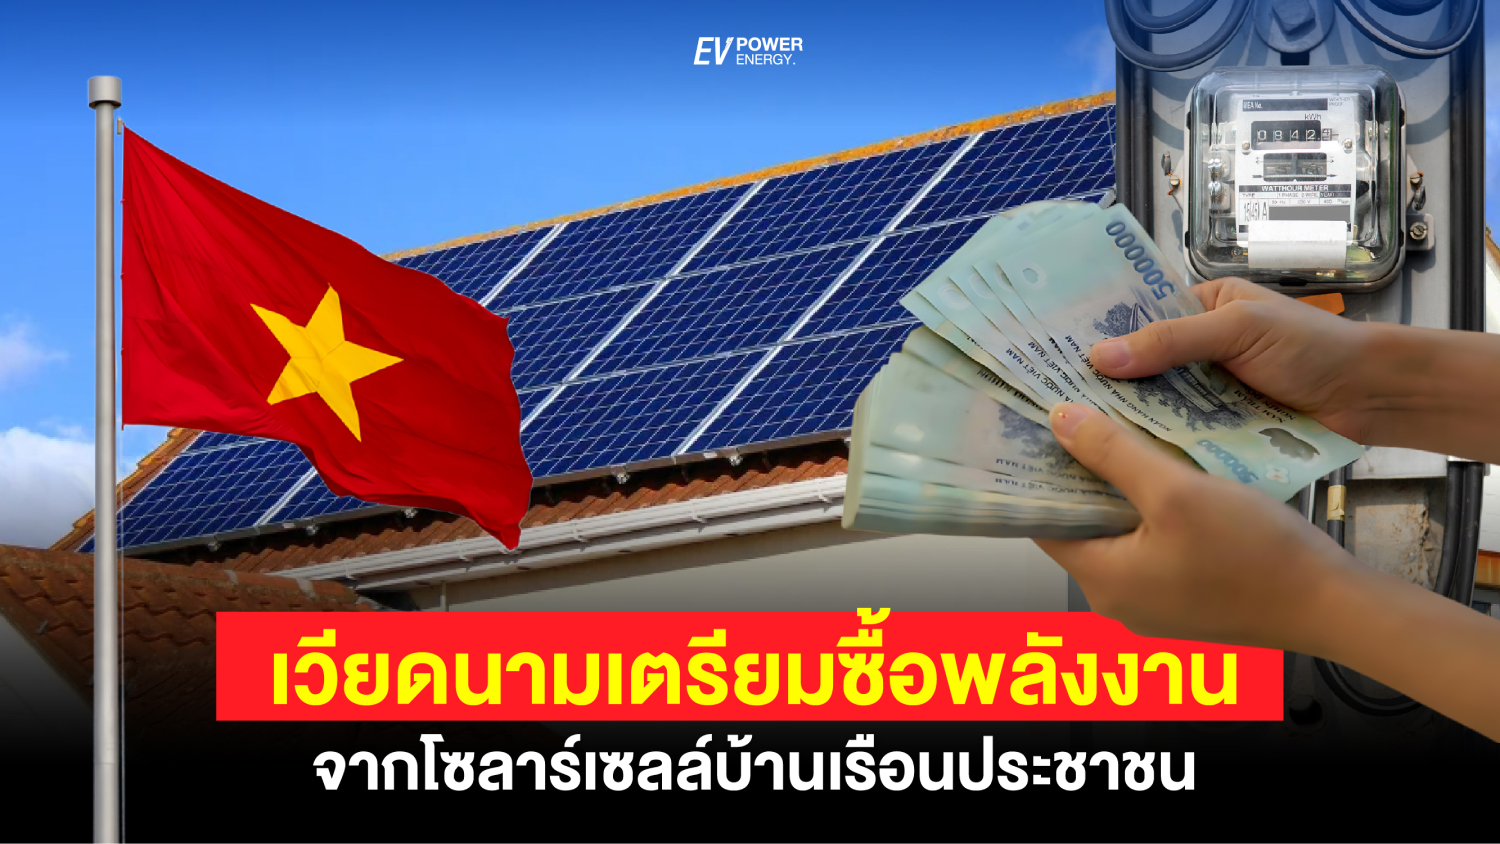 เวียดนาม เตรียมซื้อพลังงาน จากโซล่าเซลล์บ้านเรือนประชาชน